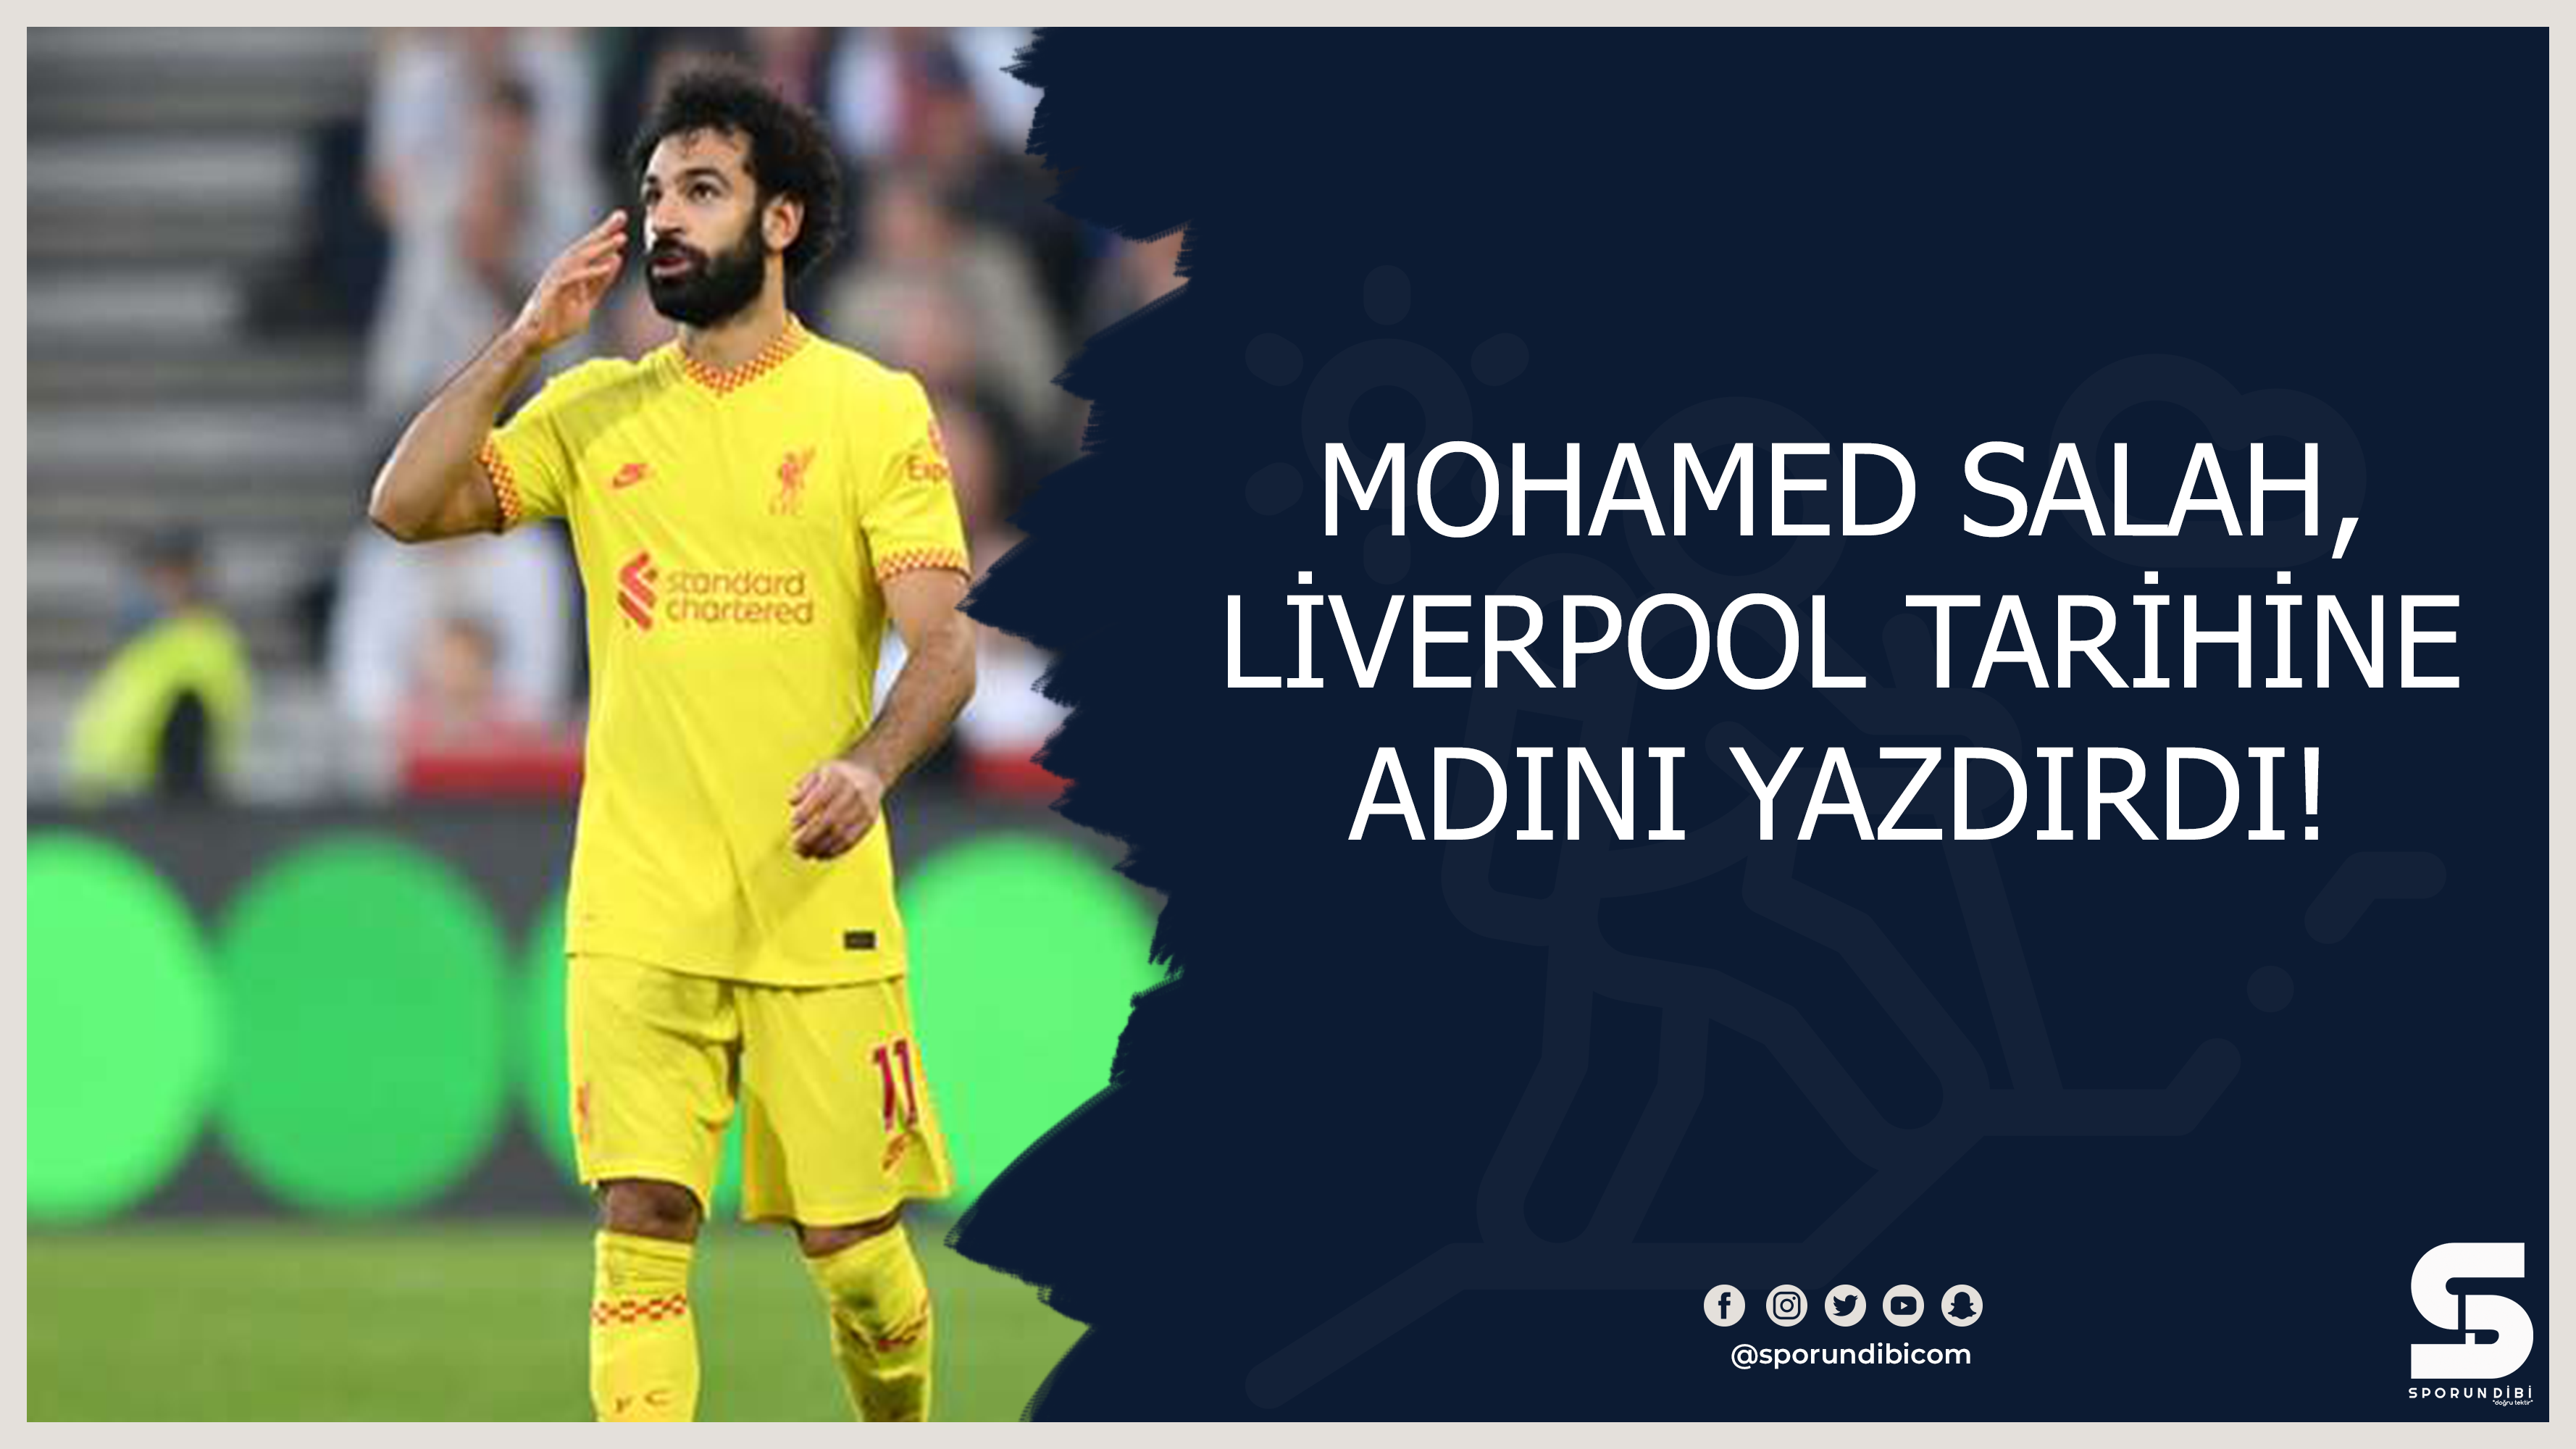 Mohamed Salah, Liverpool tarihine adını yazdırdı!